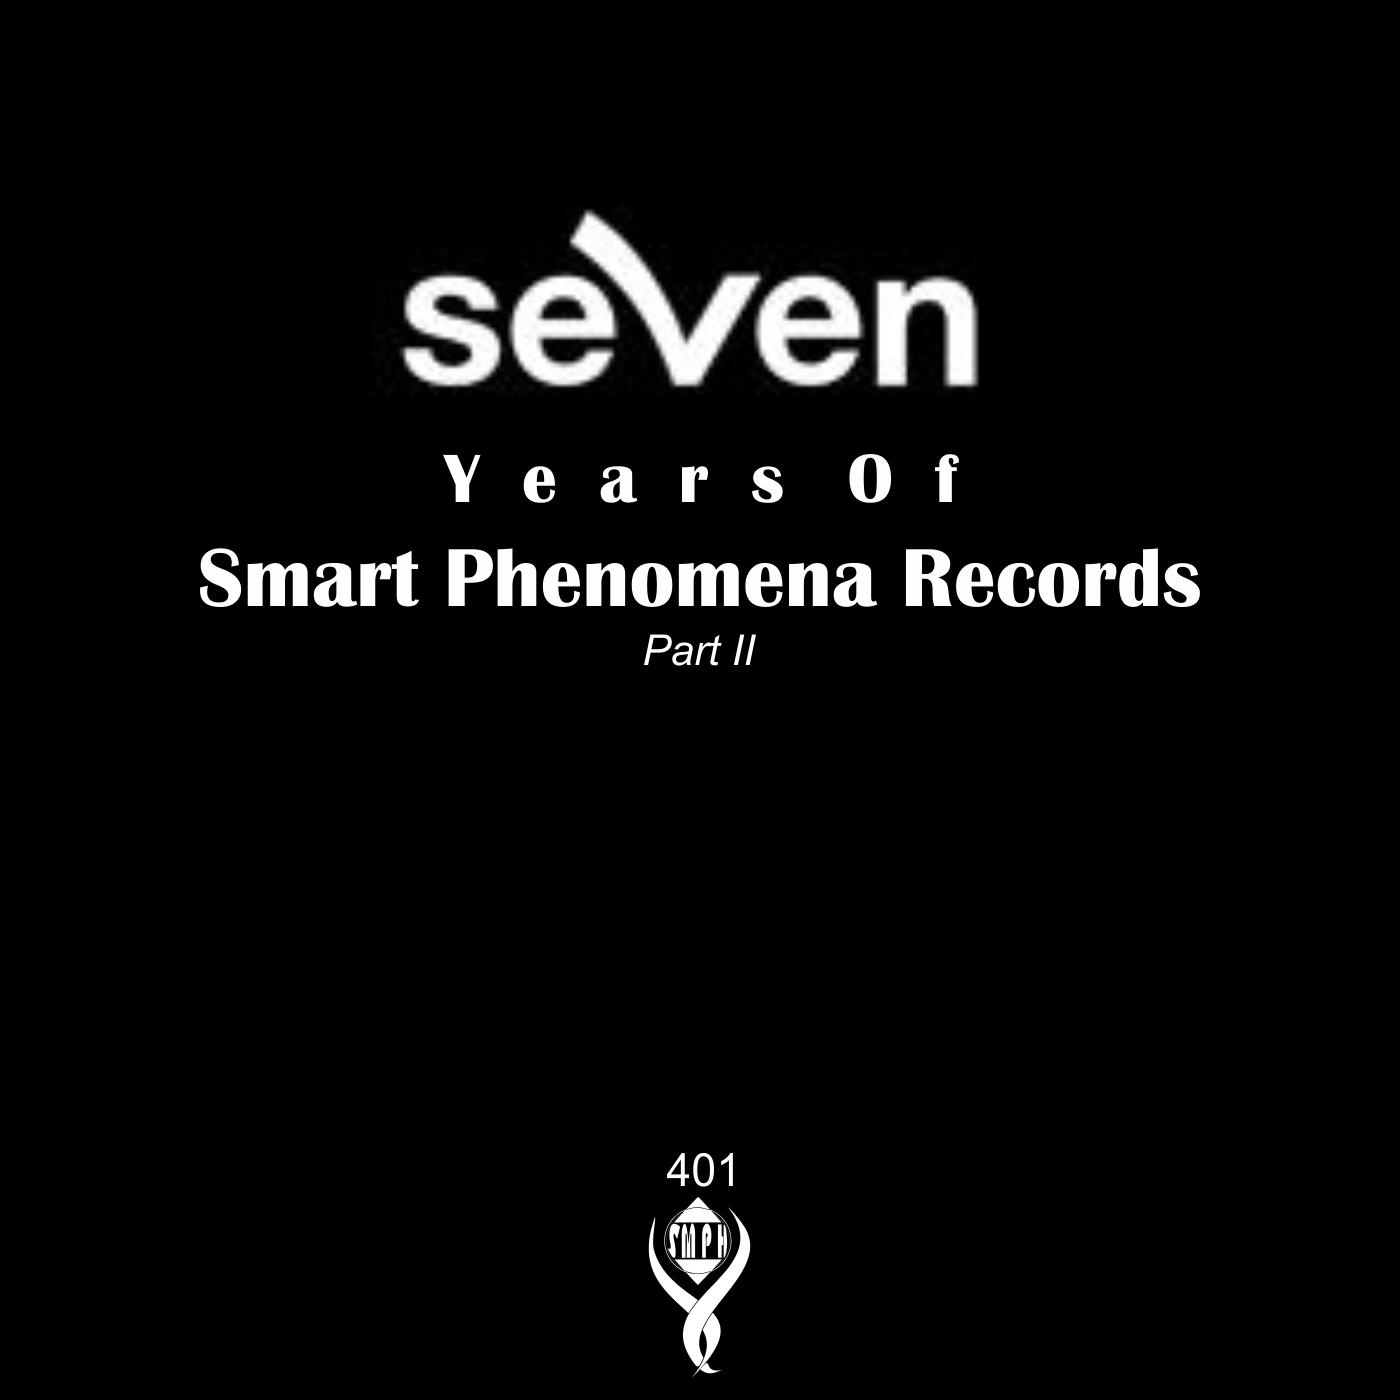 7 Years of Smart Phenomena Records/Part II